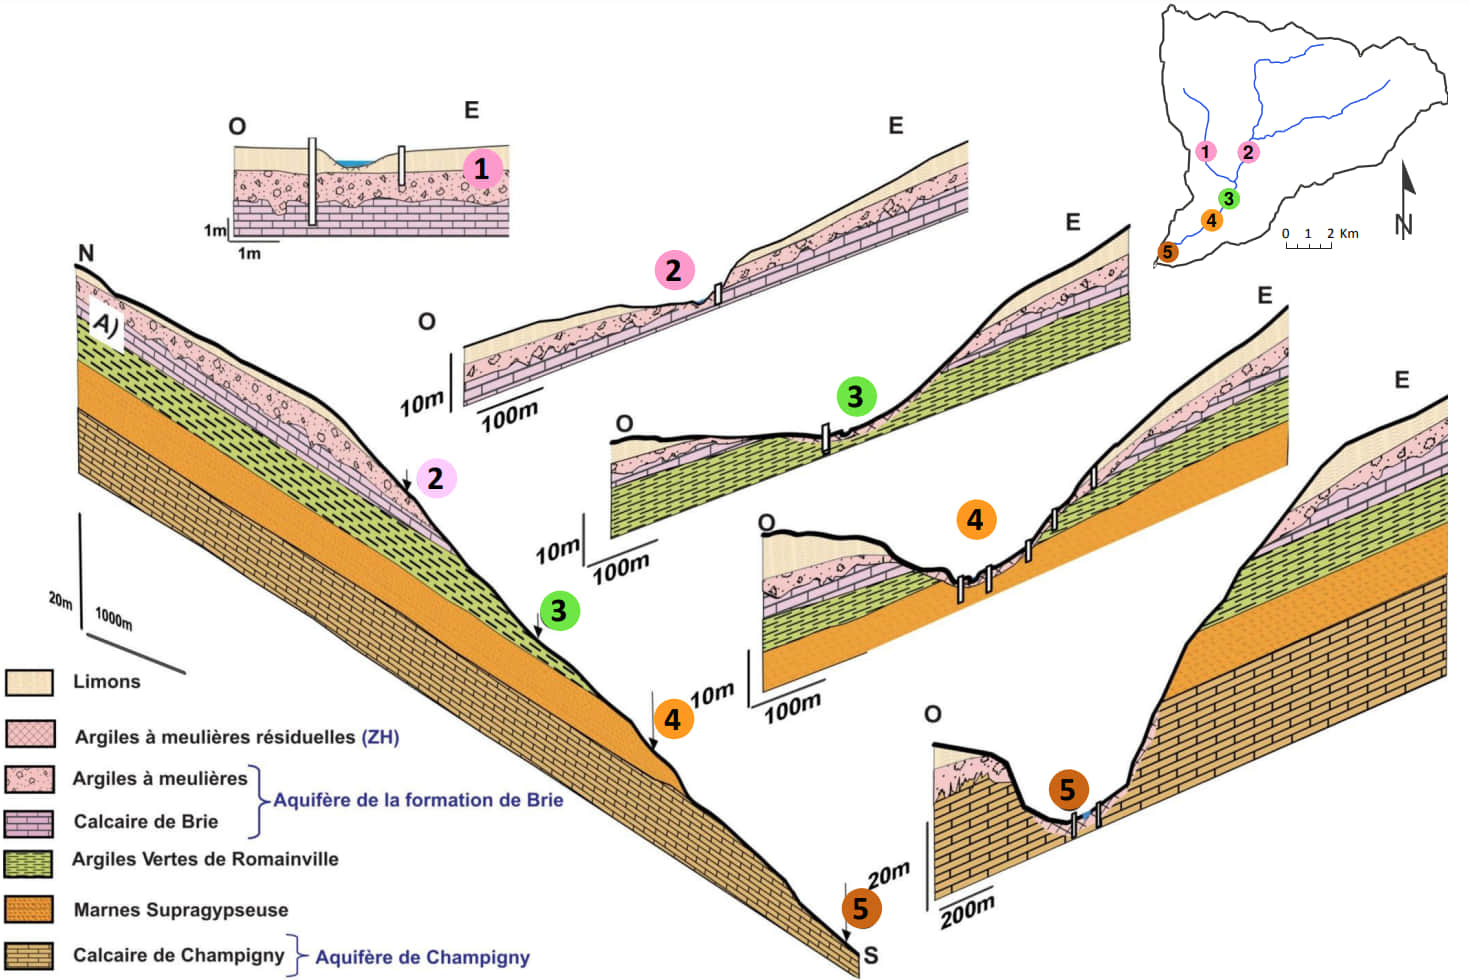 Synthèse géologique le long du corridor alluvial de la vallée des Avenelles. (Mouhri et al.,2013)